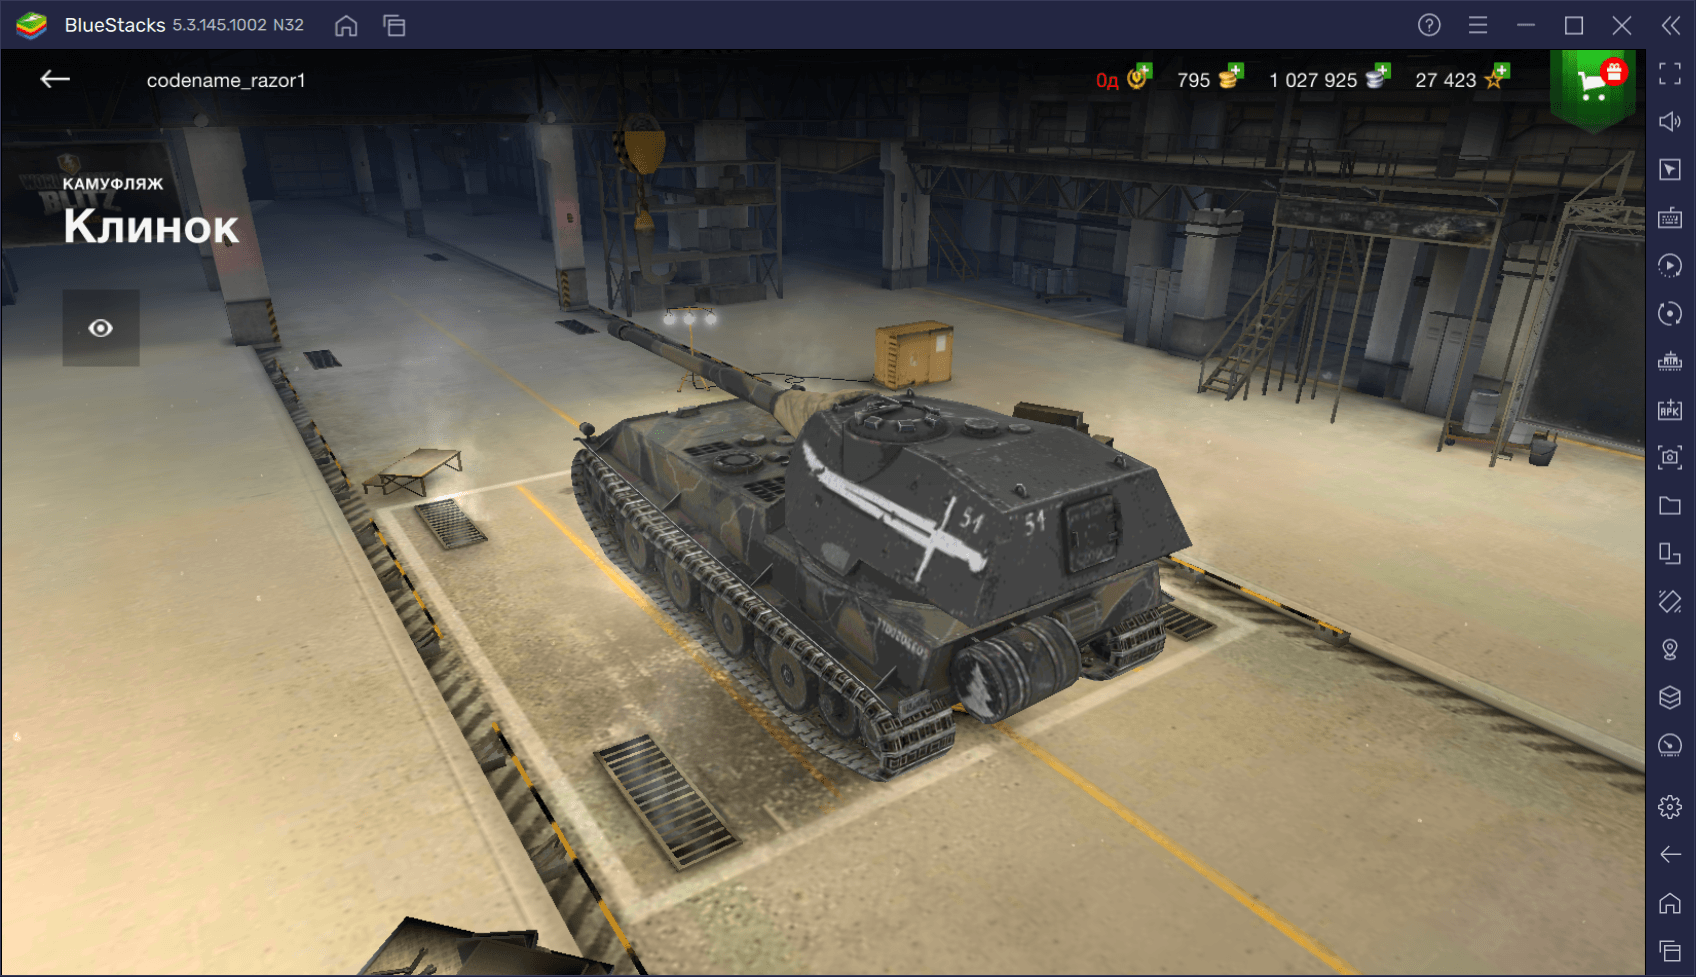 Гайд по коллекционному танку VK 90.01 (P) в World of Tanks Blitz. Обзор характеристик, преимуществ и тактик игры